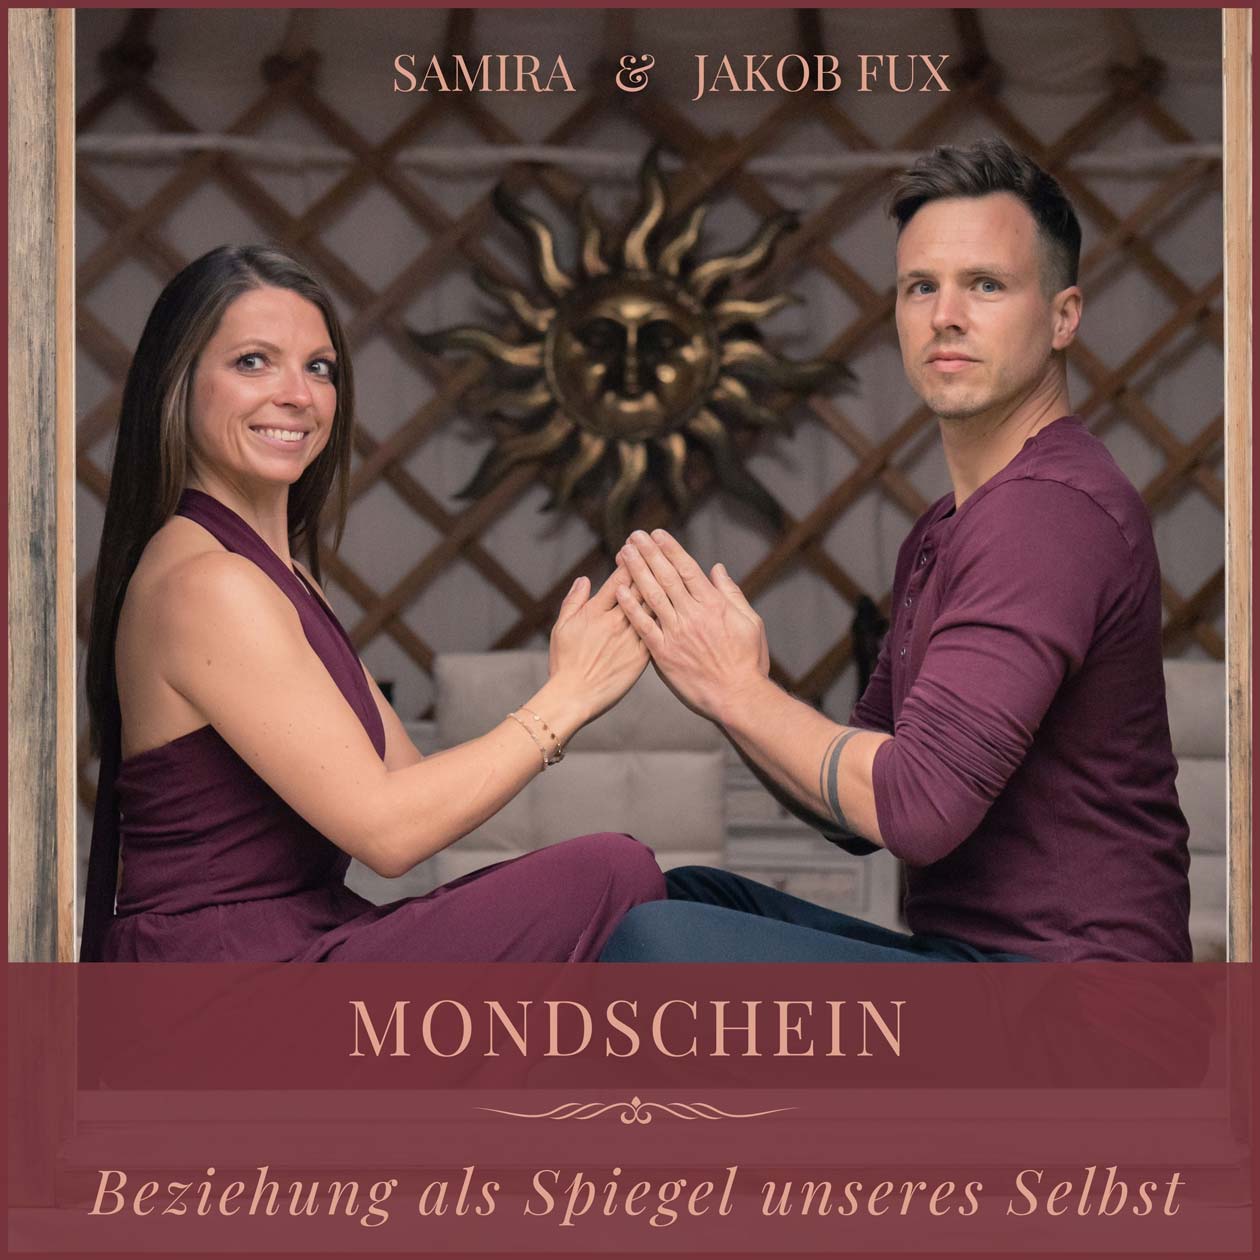 Cover des Podcasts Mondschein, auf dem Samira und Jakob Fux zu sehen sind. Die beiden sitzen sich gegenüber, haben die Hände gemeinsam gefaltet und blicken in die Kamera.